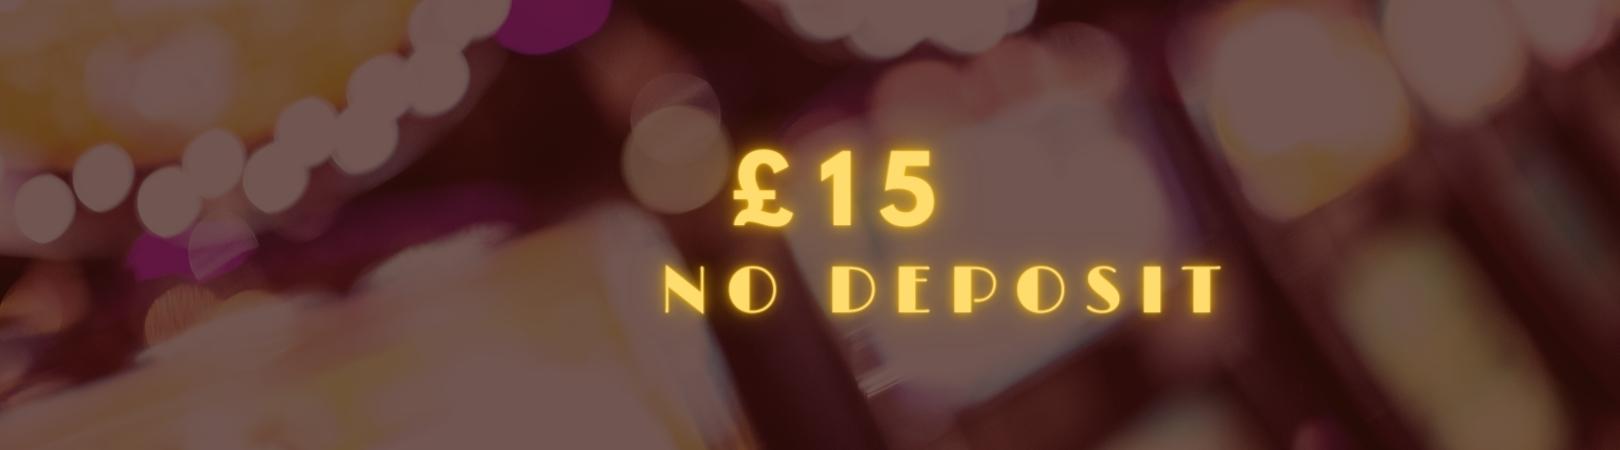 £15 no deposit img